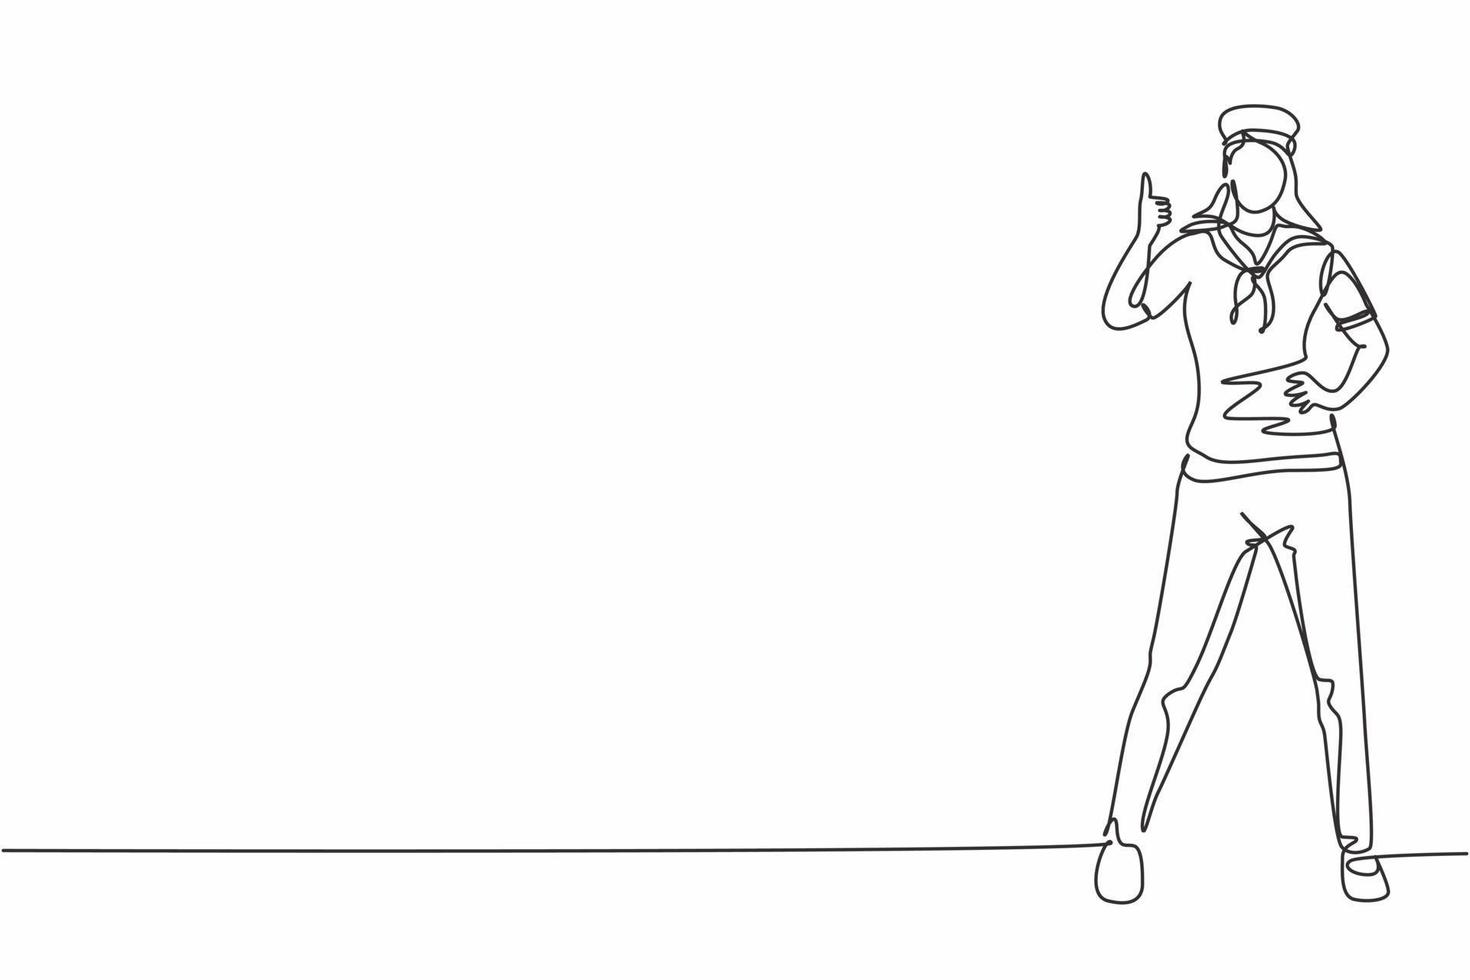 enda en linje ritning av sjömanskvinna står med tummen upp för att vara en del av ett kryssningsfartyg som transporterar passagerare som reser över havet. kontinuerlig linje rita design grafisk vektor illustration